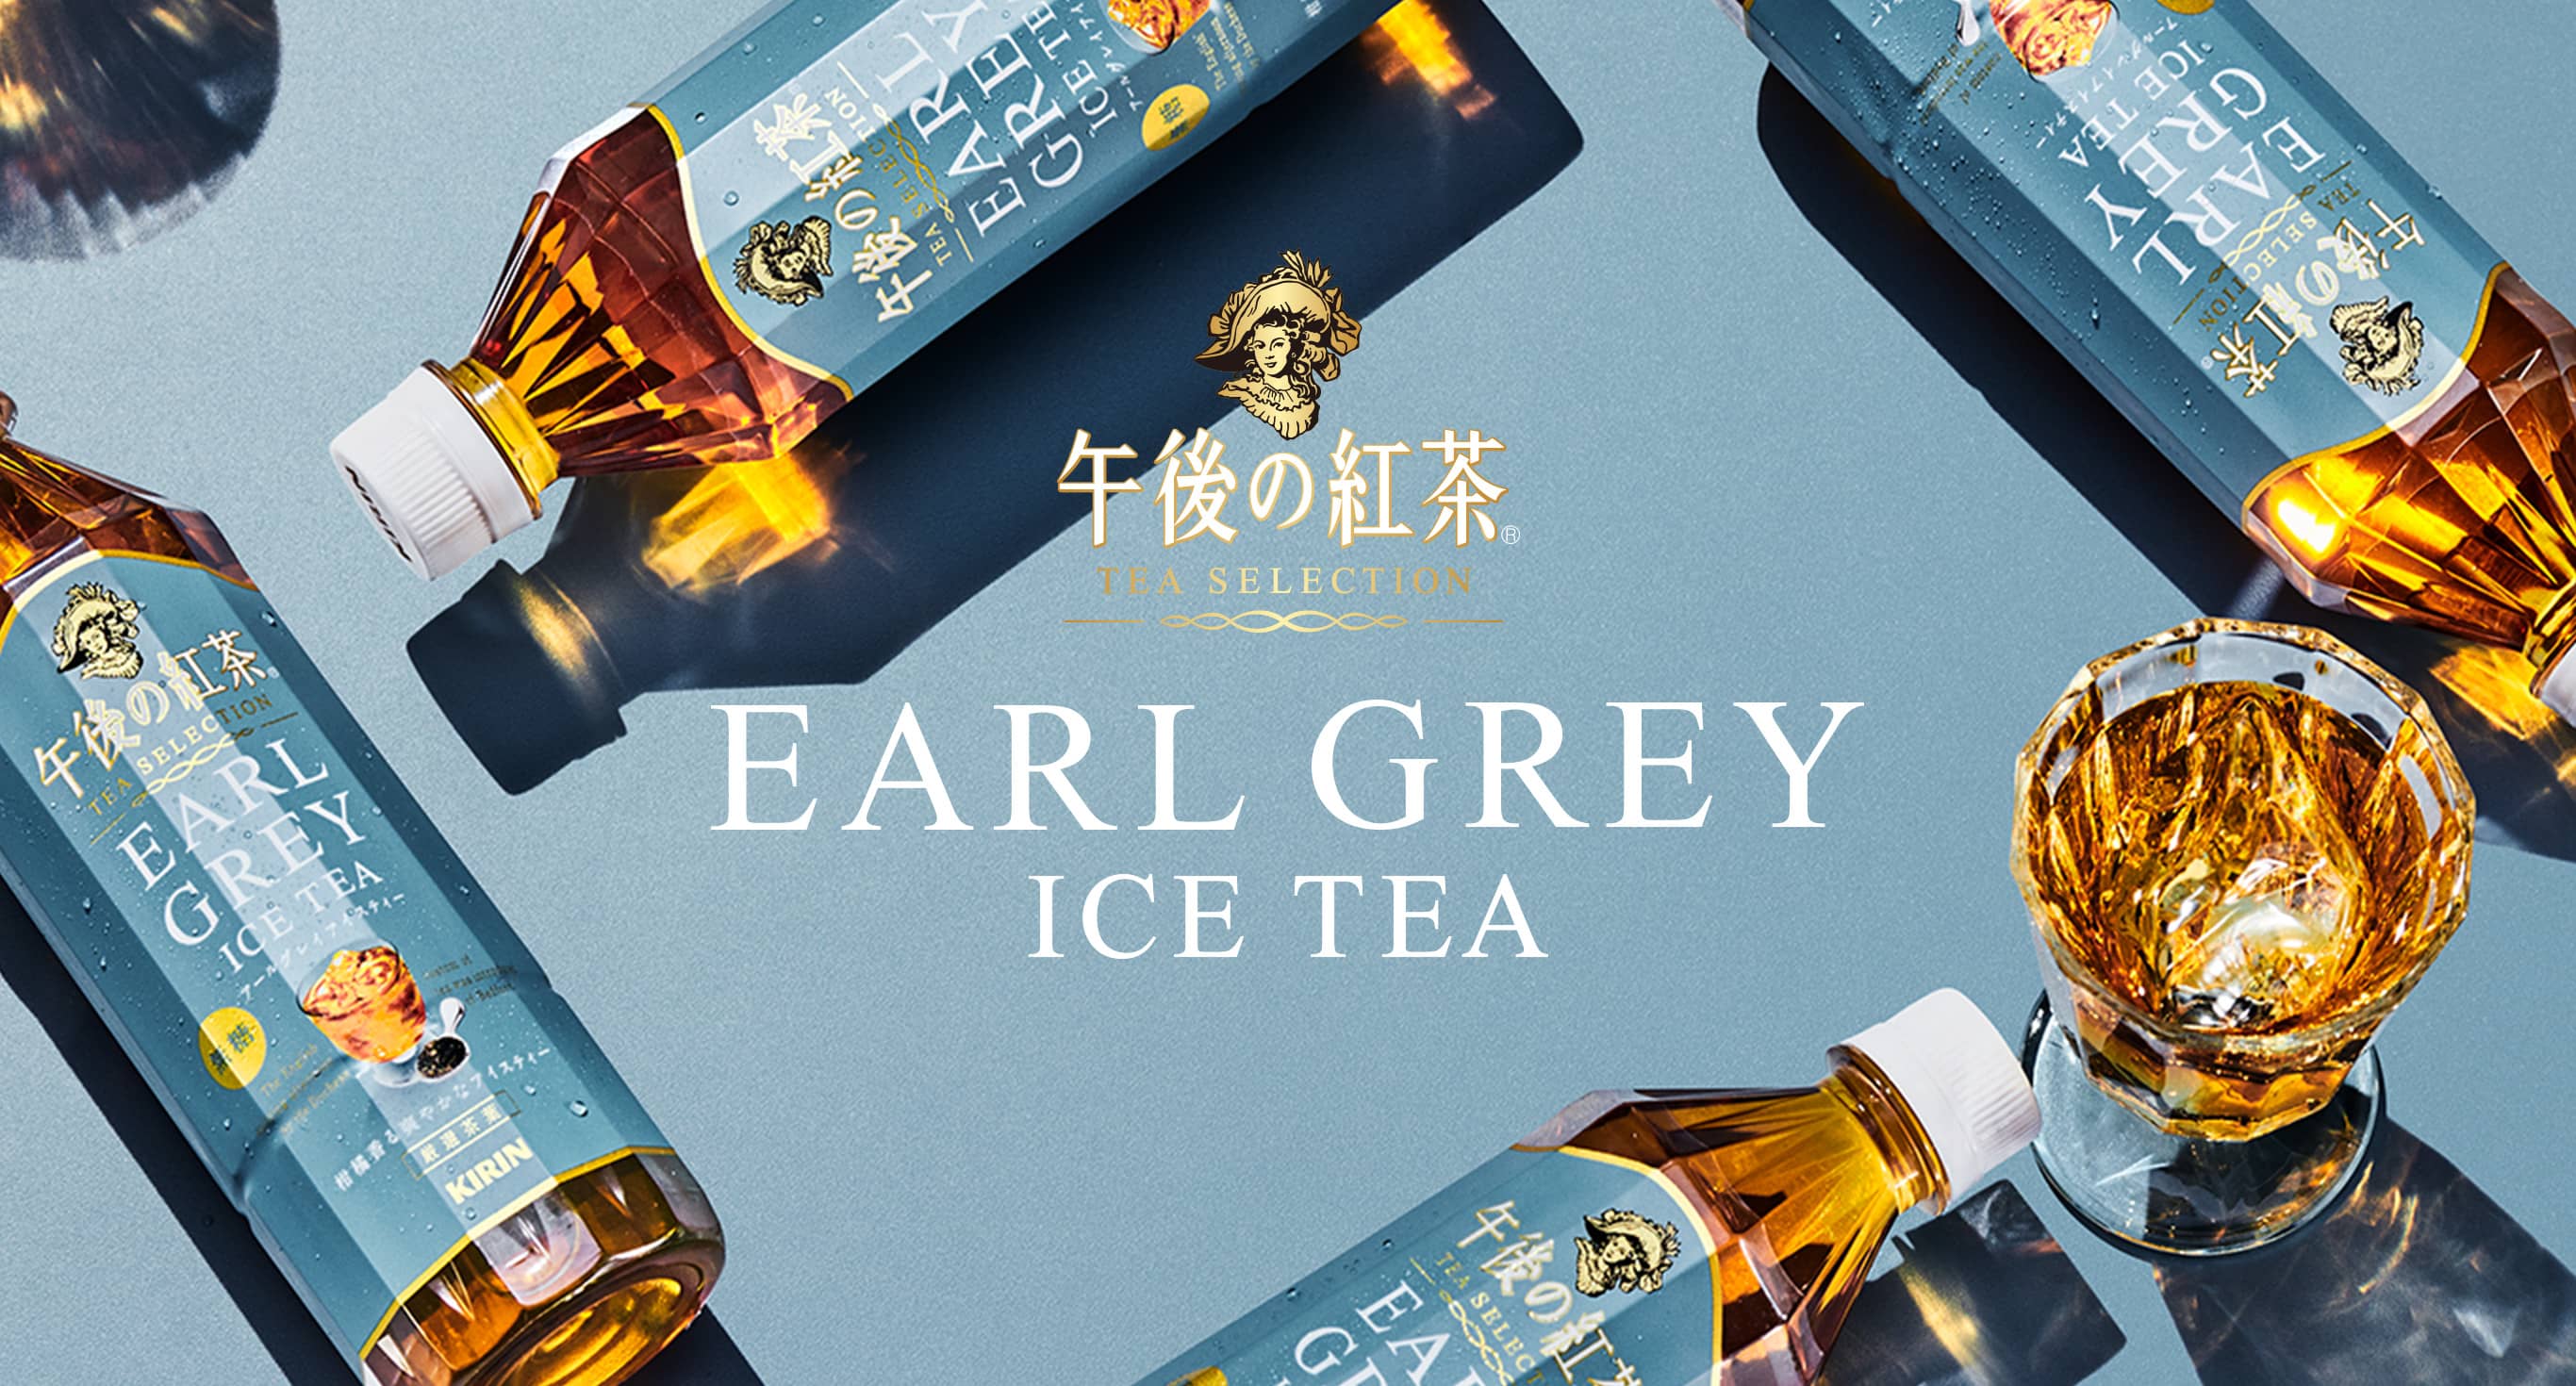 EARL GREY ICE TEA